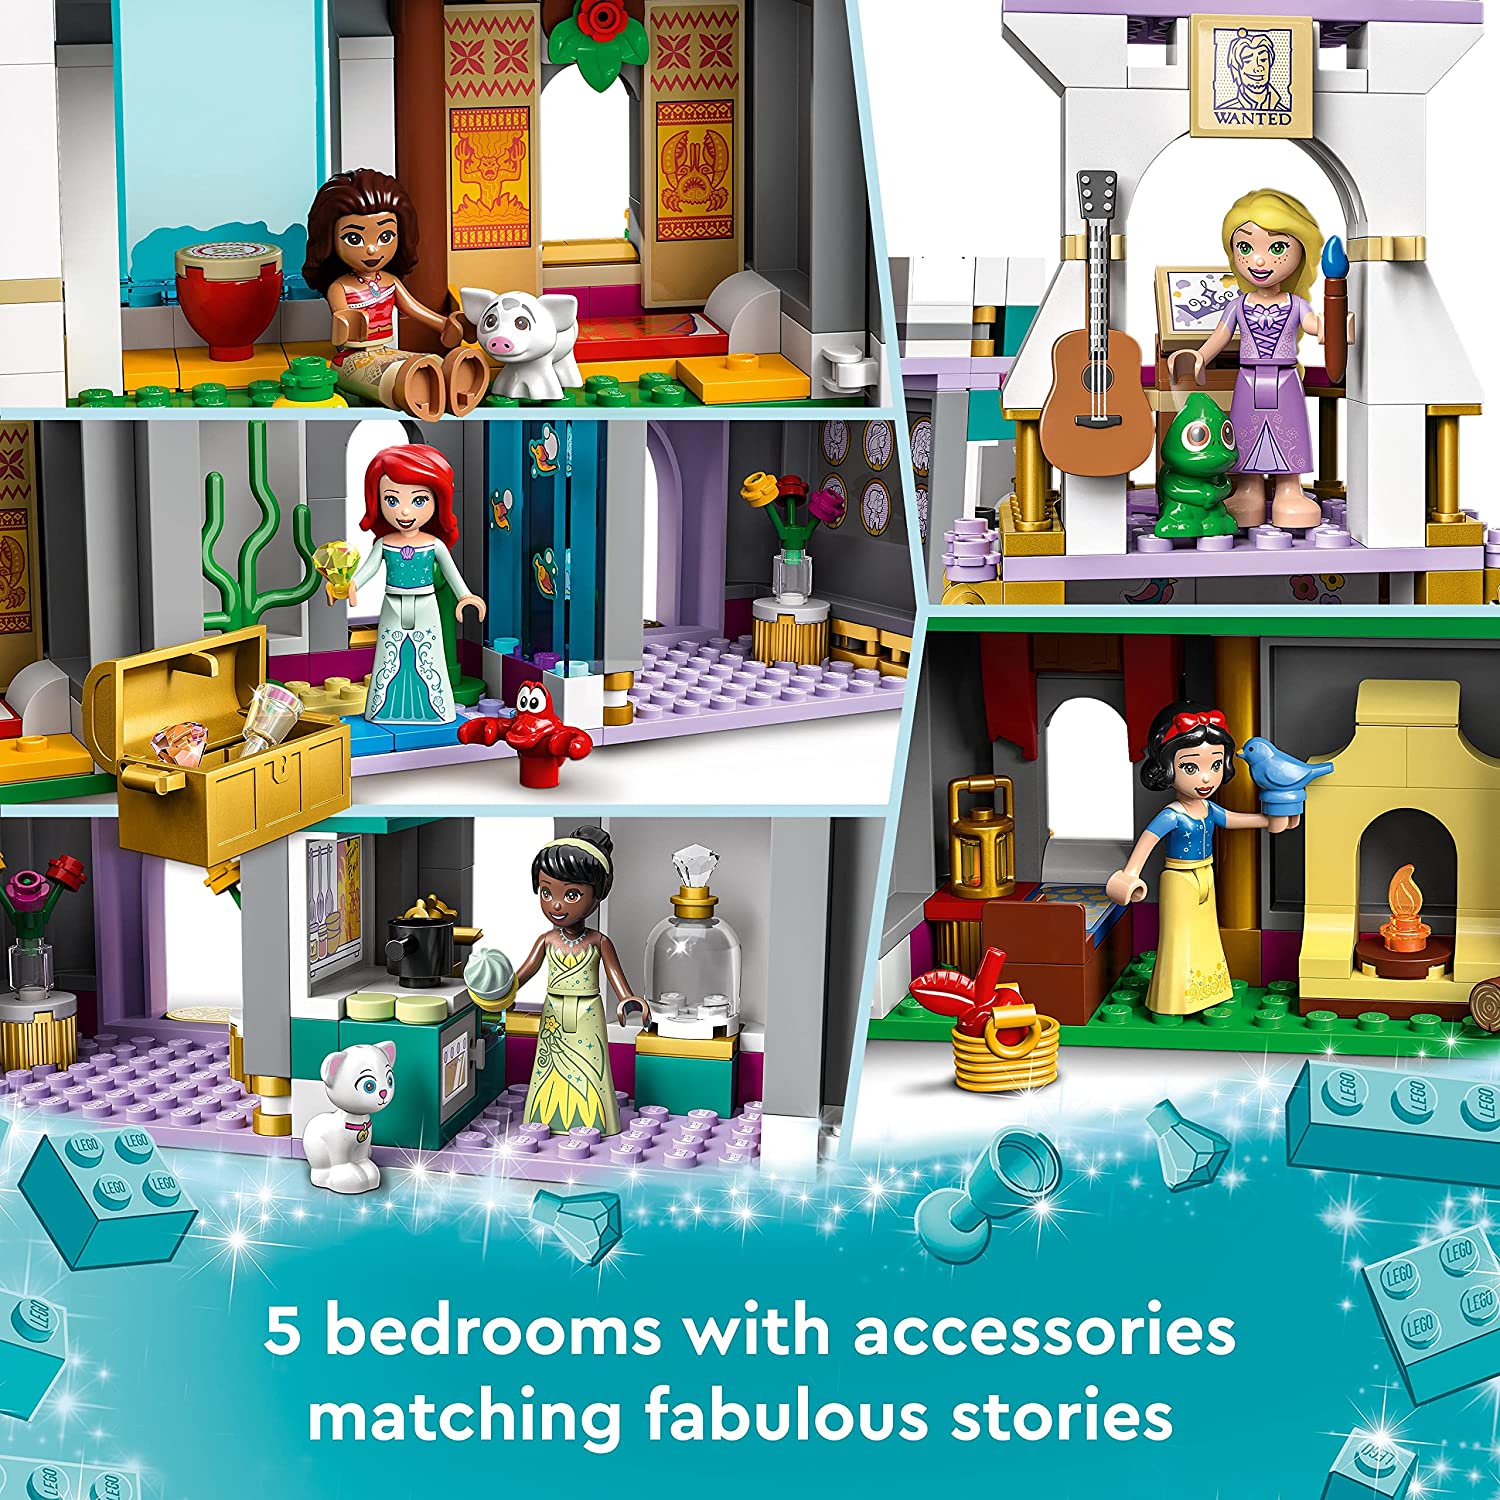 LEGO Disney Princess Ultimate Adventure Castle 43205